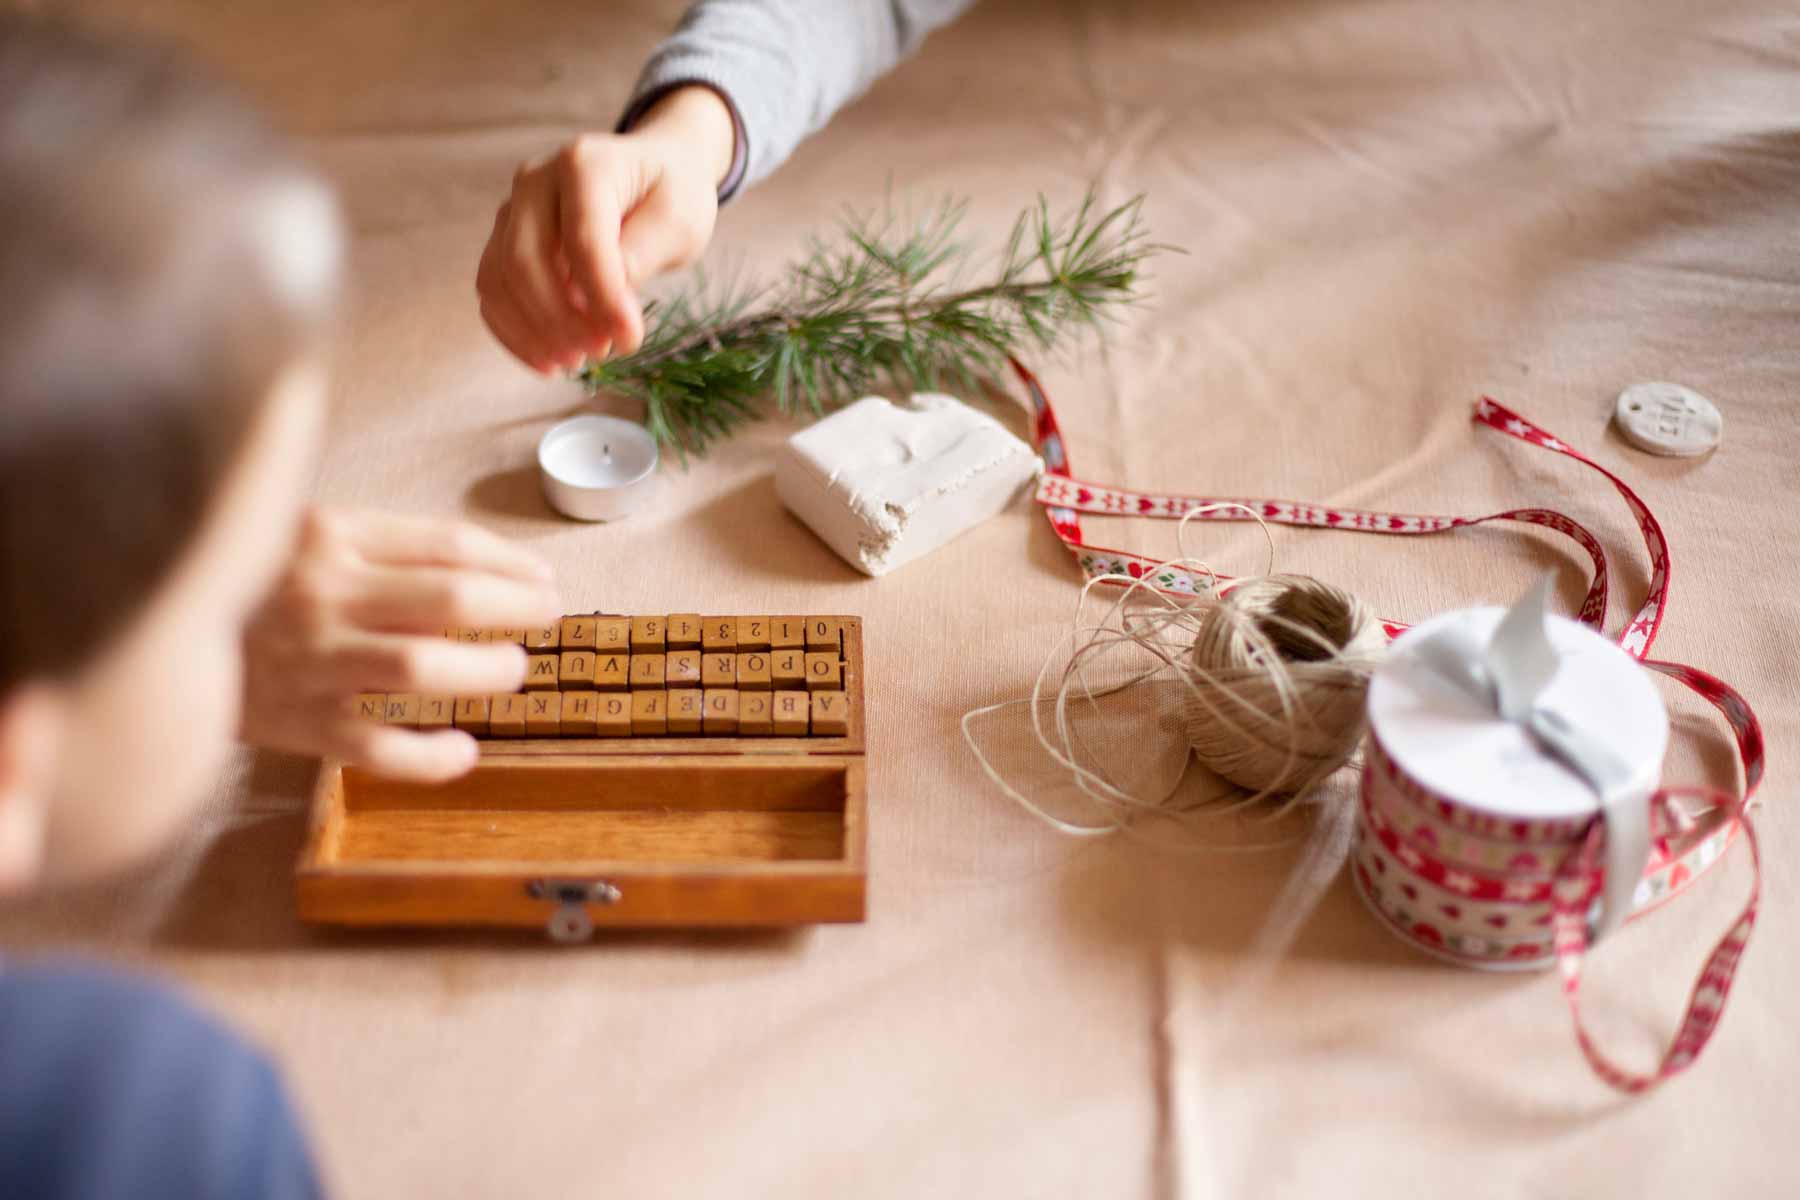 DIY servilleteros para navidad